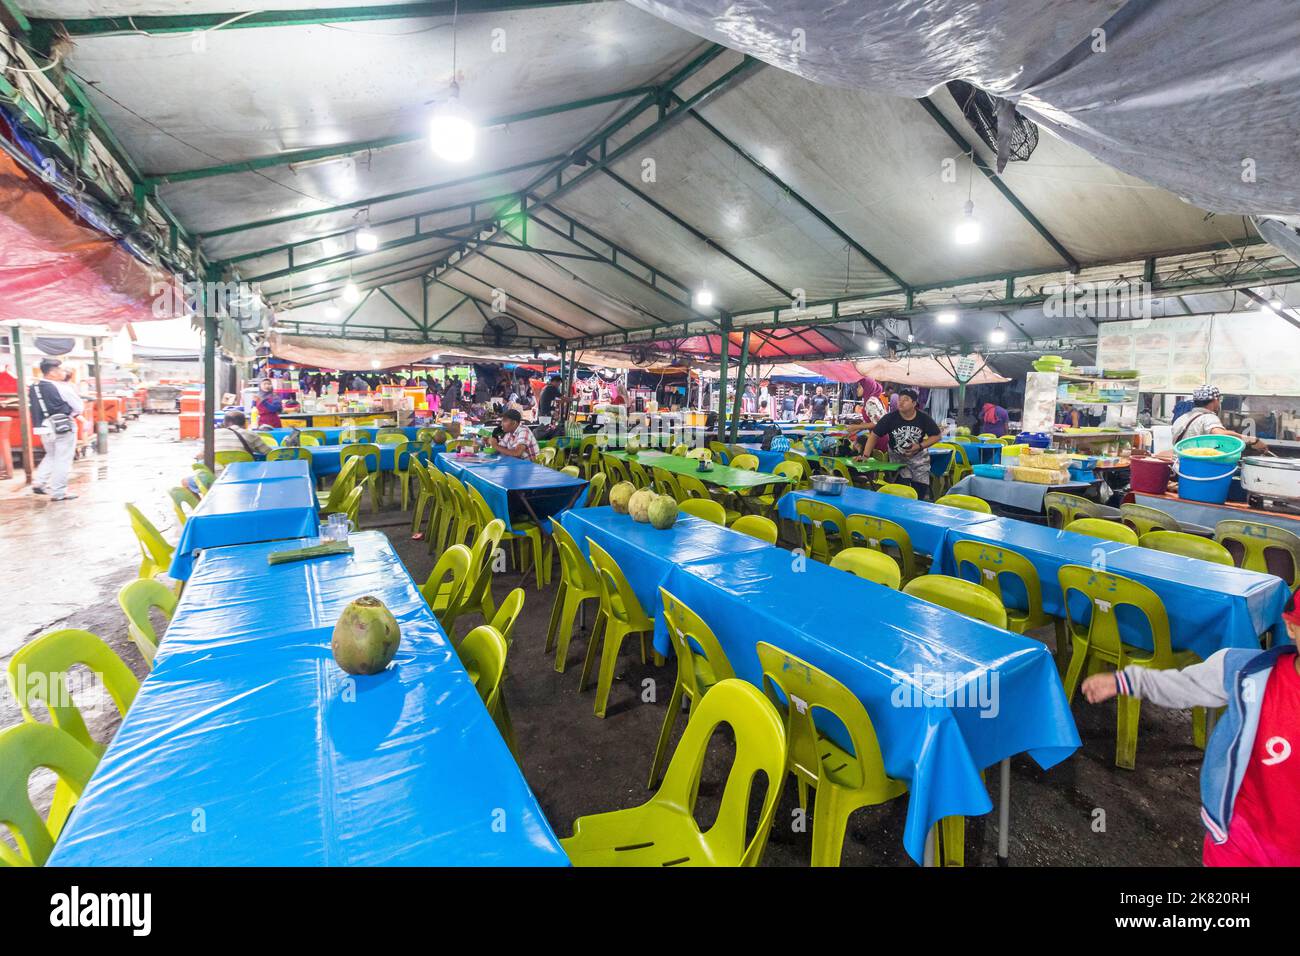 An open air, local food court in Kota Kinabalu, Sabah, Malaysia Stock Photo